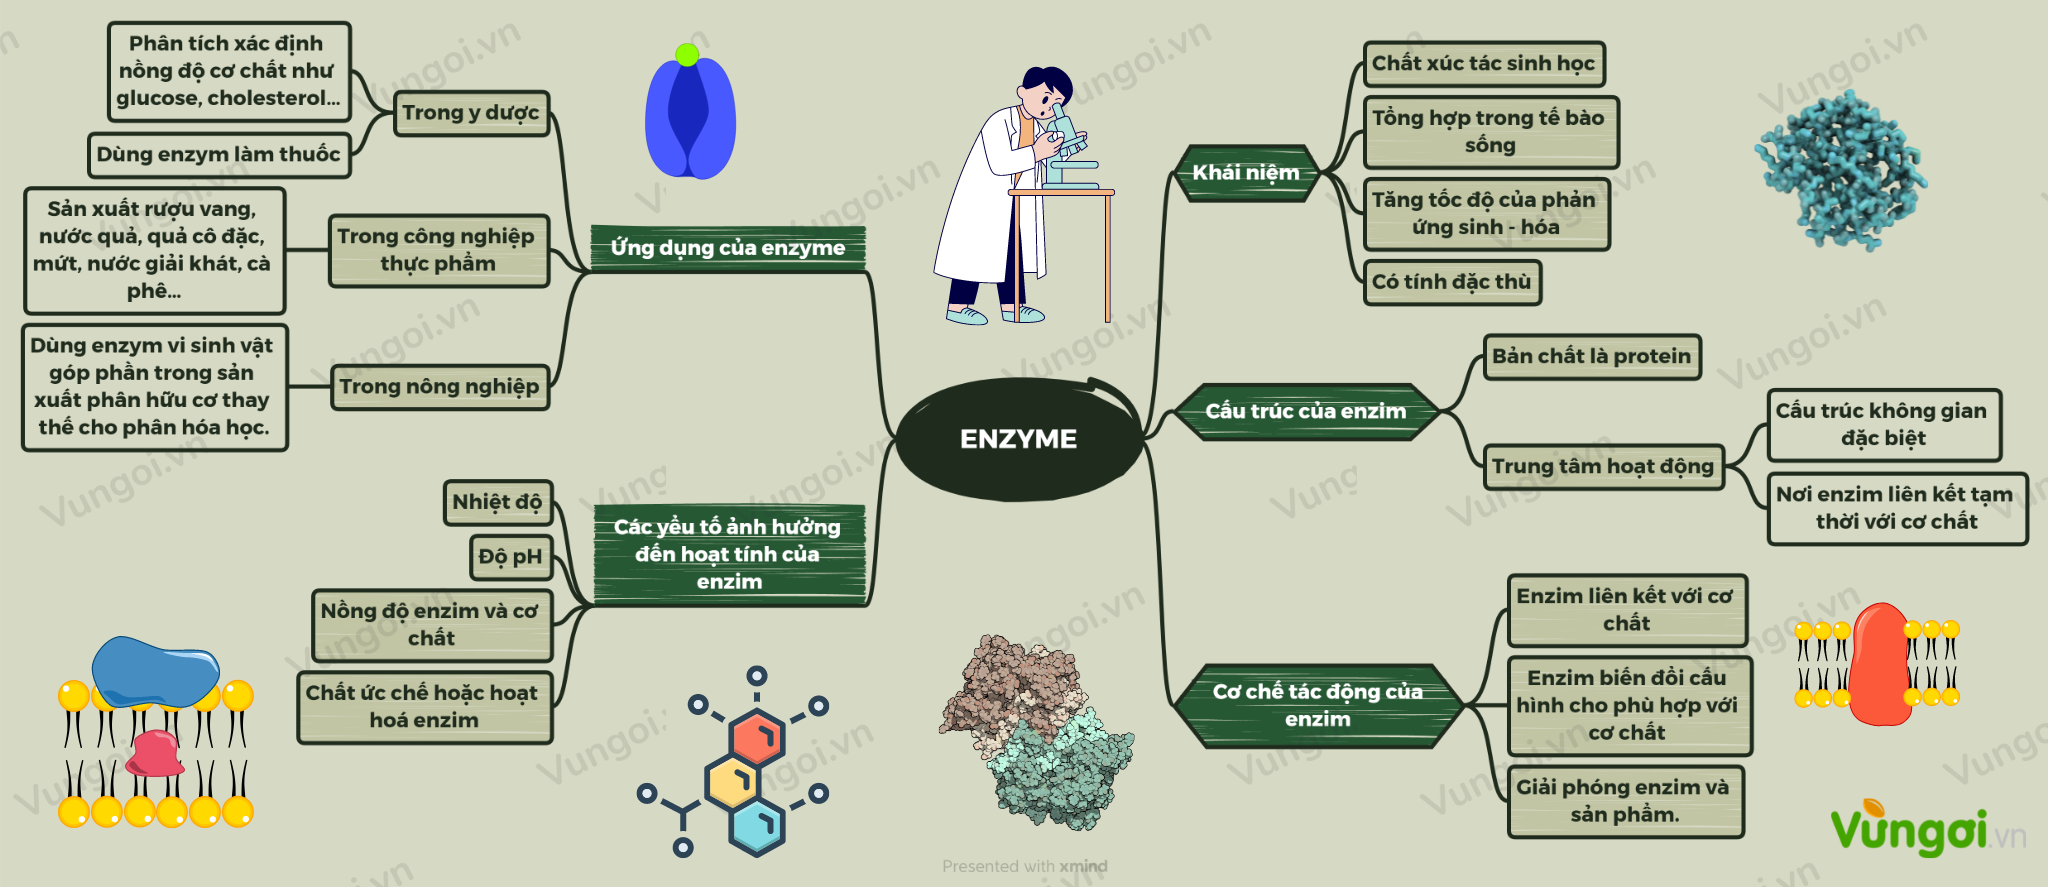 Enzyme là tế bào vi khuẩn được biết đến với tác dụng phân hủy chất khó tiêu. Nếu bạn muốn tìm hiểu thêm về cách enzyme hoạt động và vai trò của chúng trong cơ thể, hãy bấm vào bức ảnh liên quan đến enzyme.